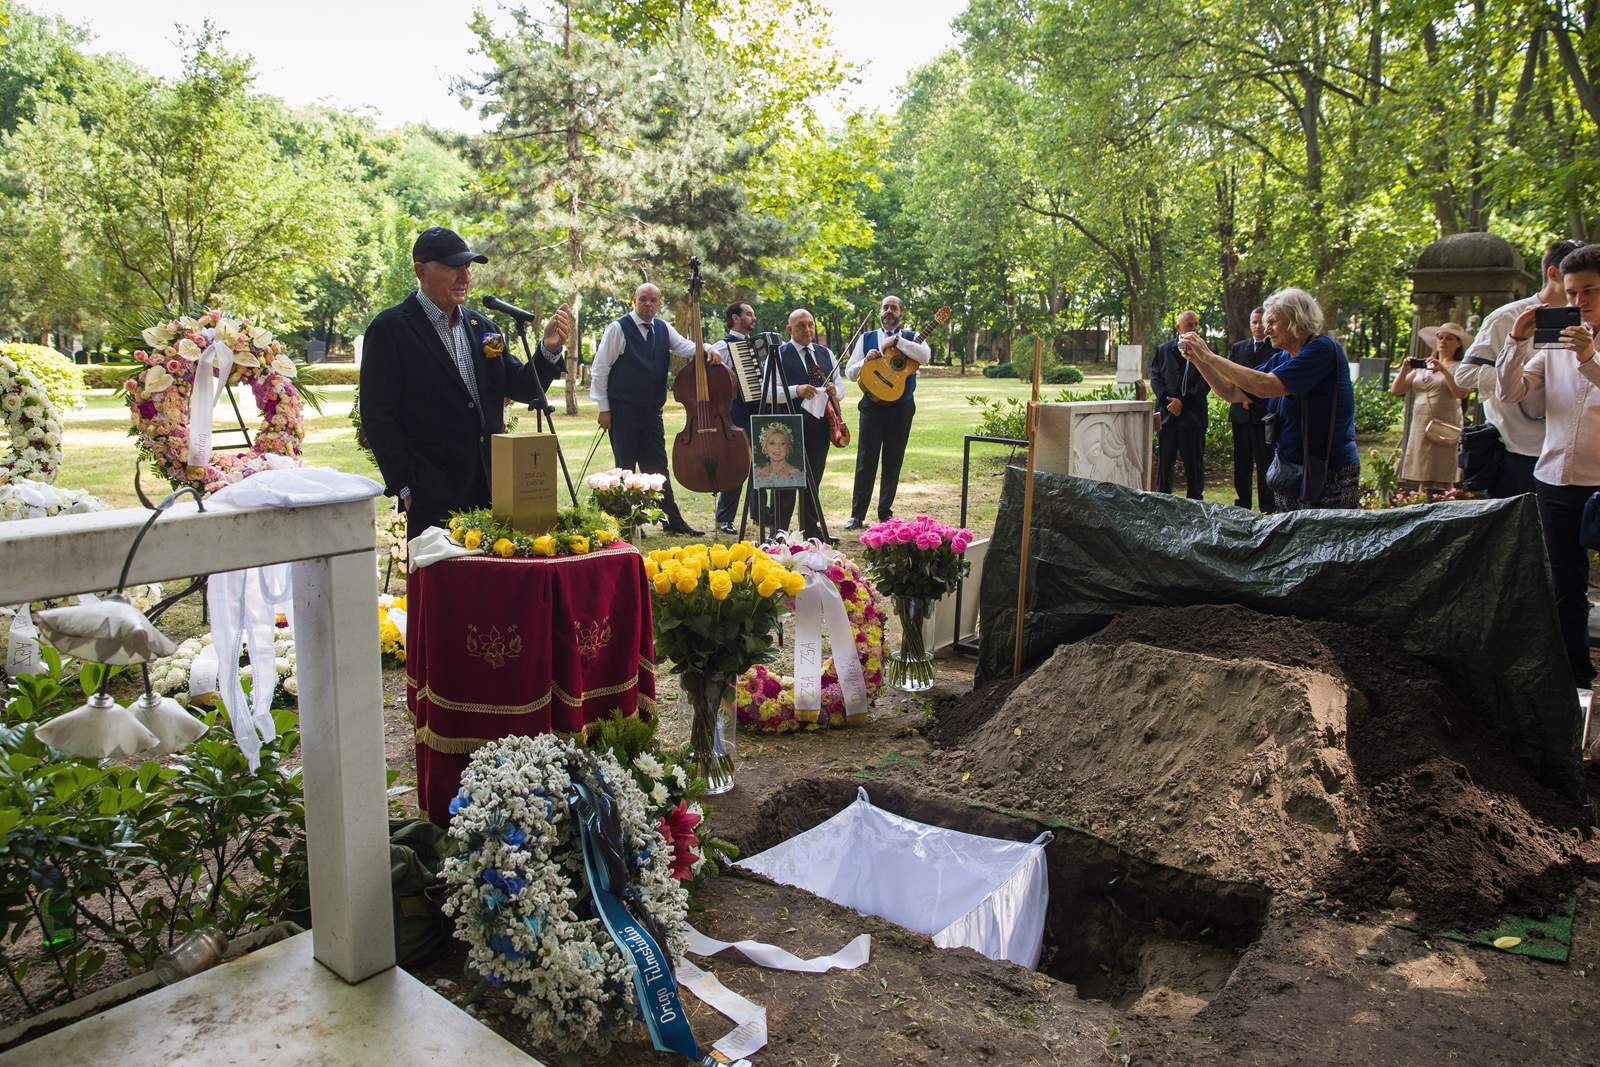 ザザ・ガボールの遺灰は火曜日、ブダペストのフィウメイ通りの墓地に埋葬され、彼女の死からほぼ XNUMX 年が経過した。